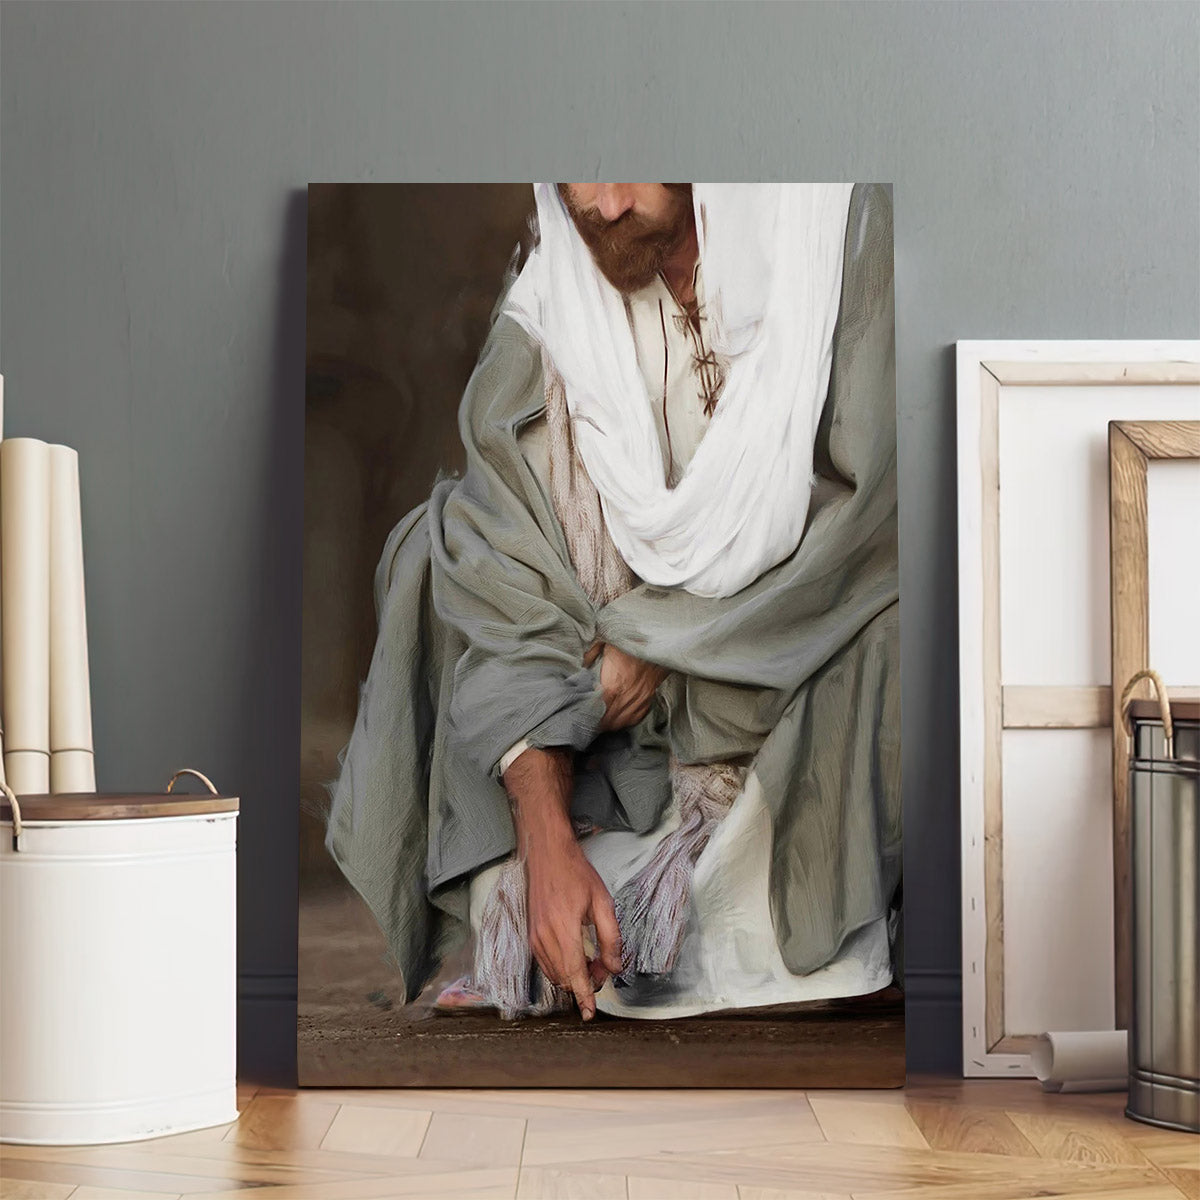 Jesus Christ Fine Art - Canvas Pictures - Jesus Canvas Art - Christian Wall Art